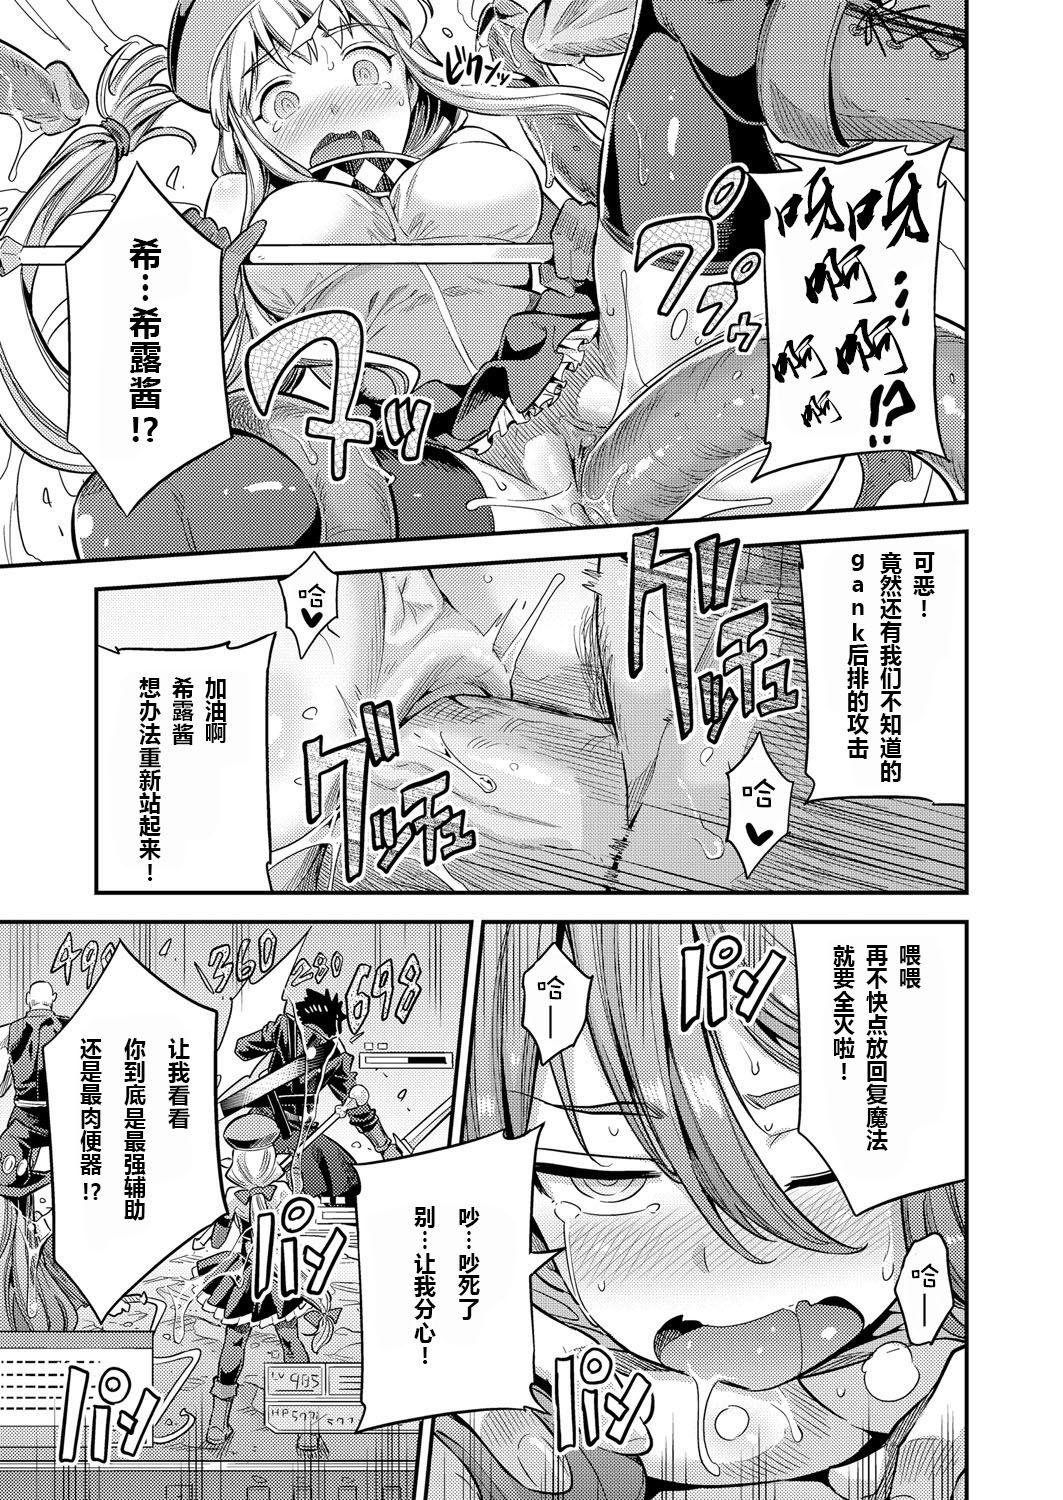 Gay Watashi ga Ittara Mina Shinjau Netoge Haijin wa Tanetsuke Rape saretemo Te ga Hanasenain desu Cam - Page 11